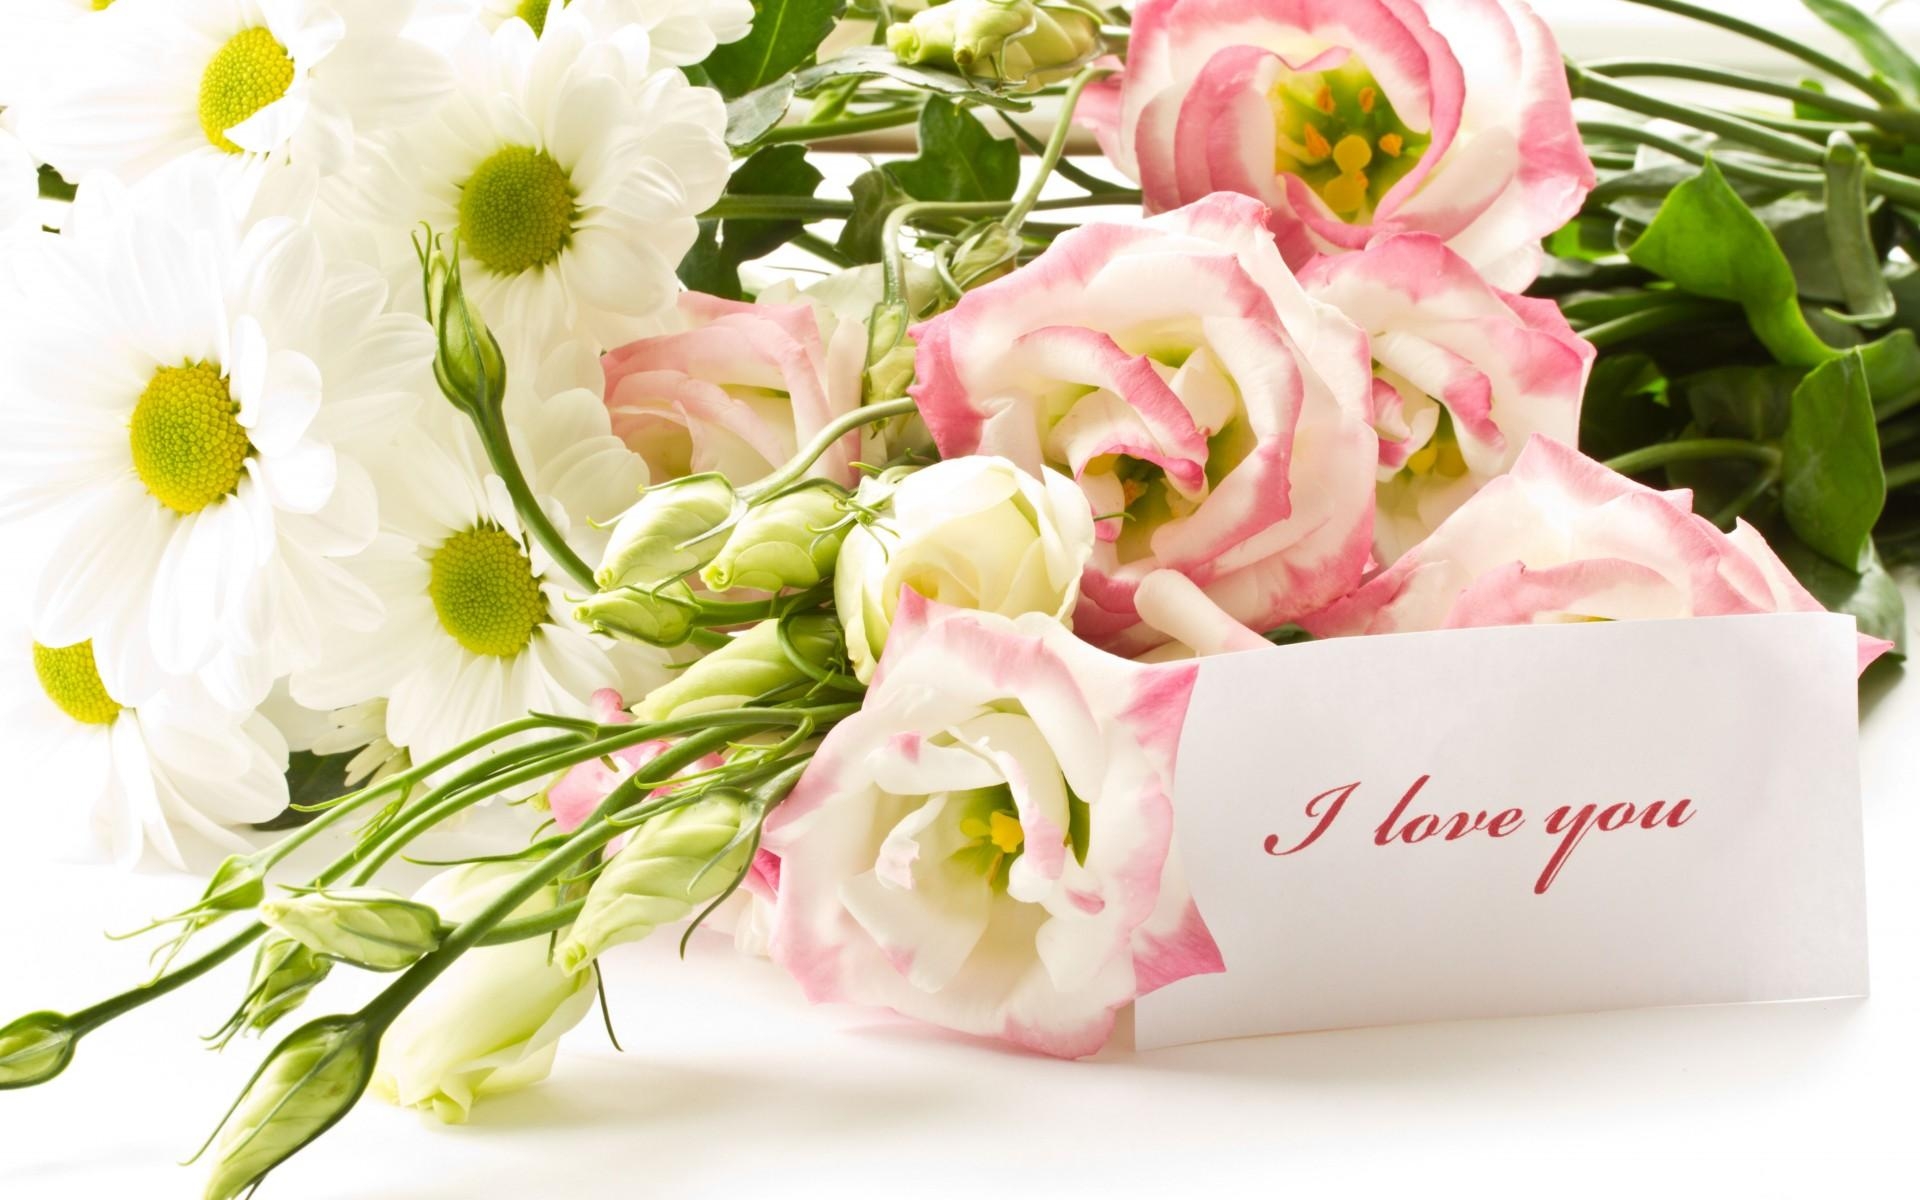 Картинки Розы, lisianthus russell, хризантемы, цветы, букет, примечание, принятие, любовь фото и обои на рабочий стол